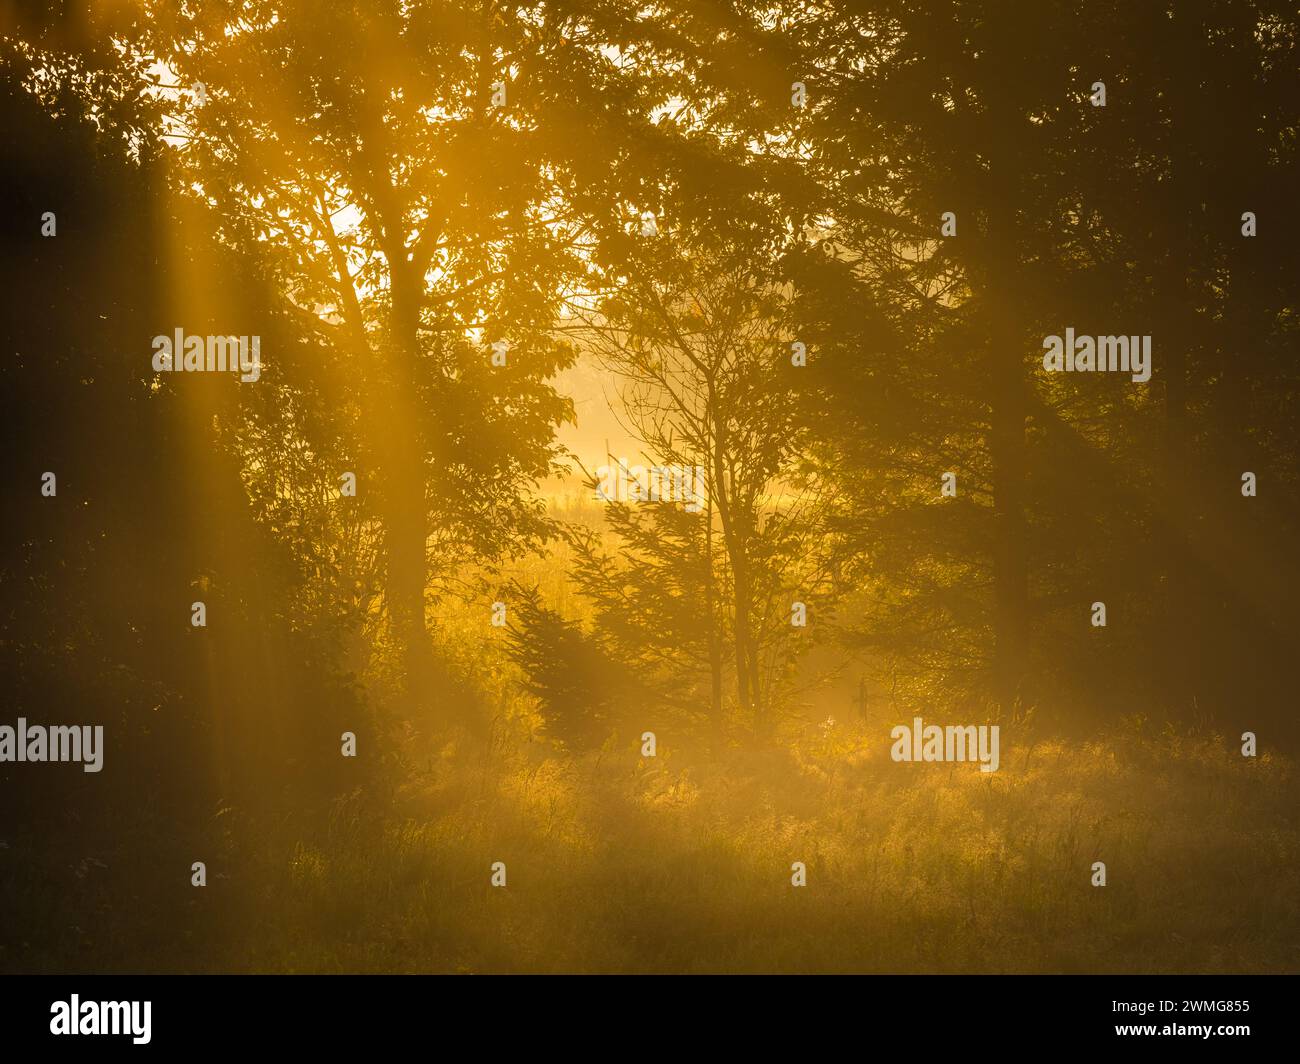 Le soleil tôt le matin jette une lueur dorée chaude à travers la brume parmi les arbres dans une forêt suédoise tranquille. La lumière filtre à travers les branches, créa Banque D'Images